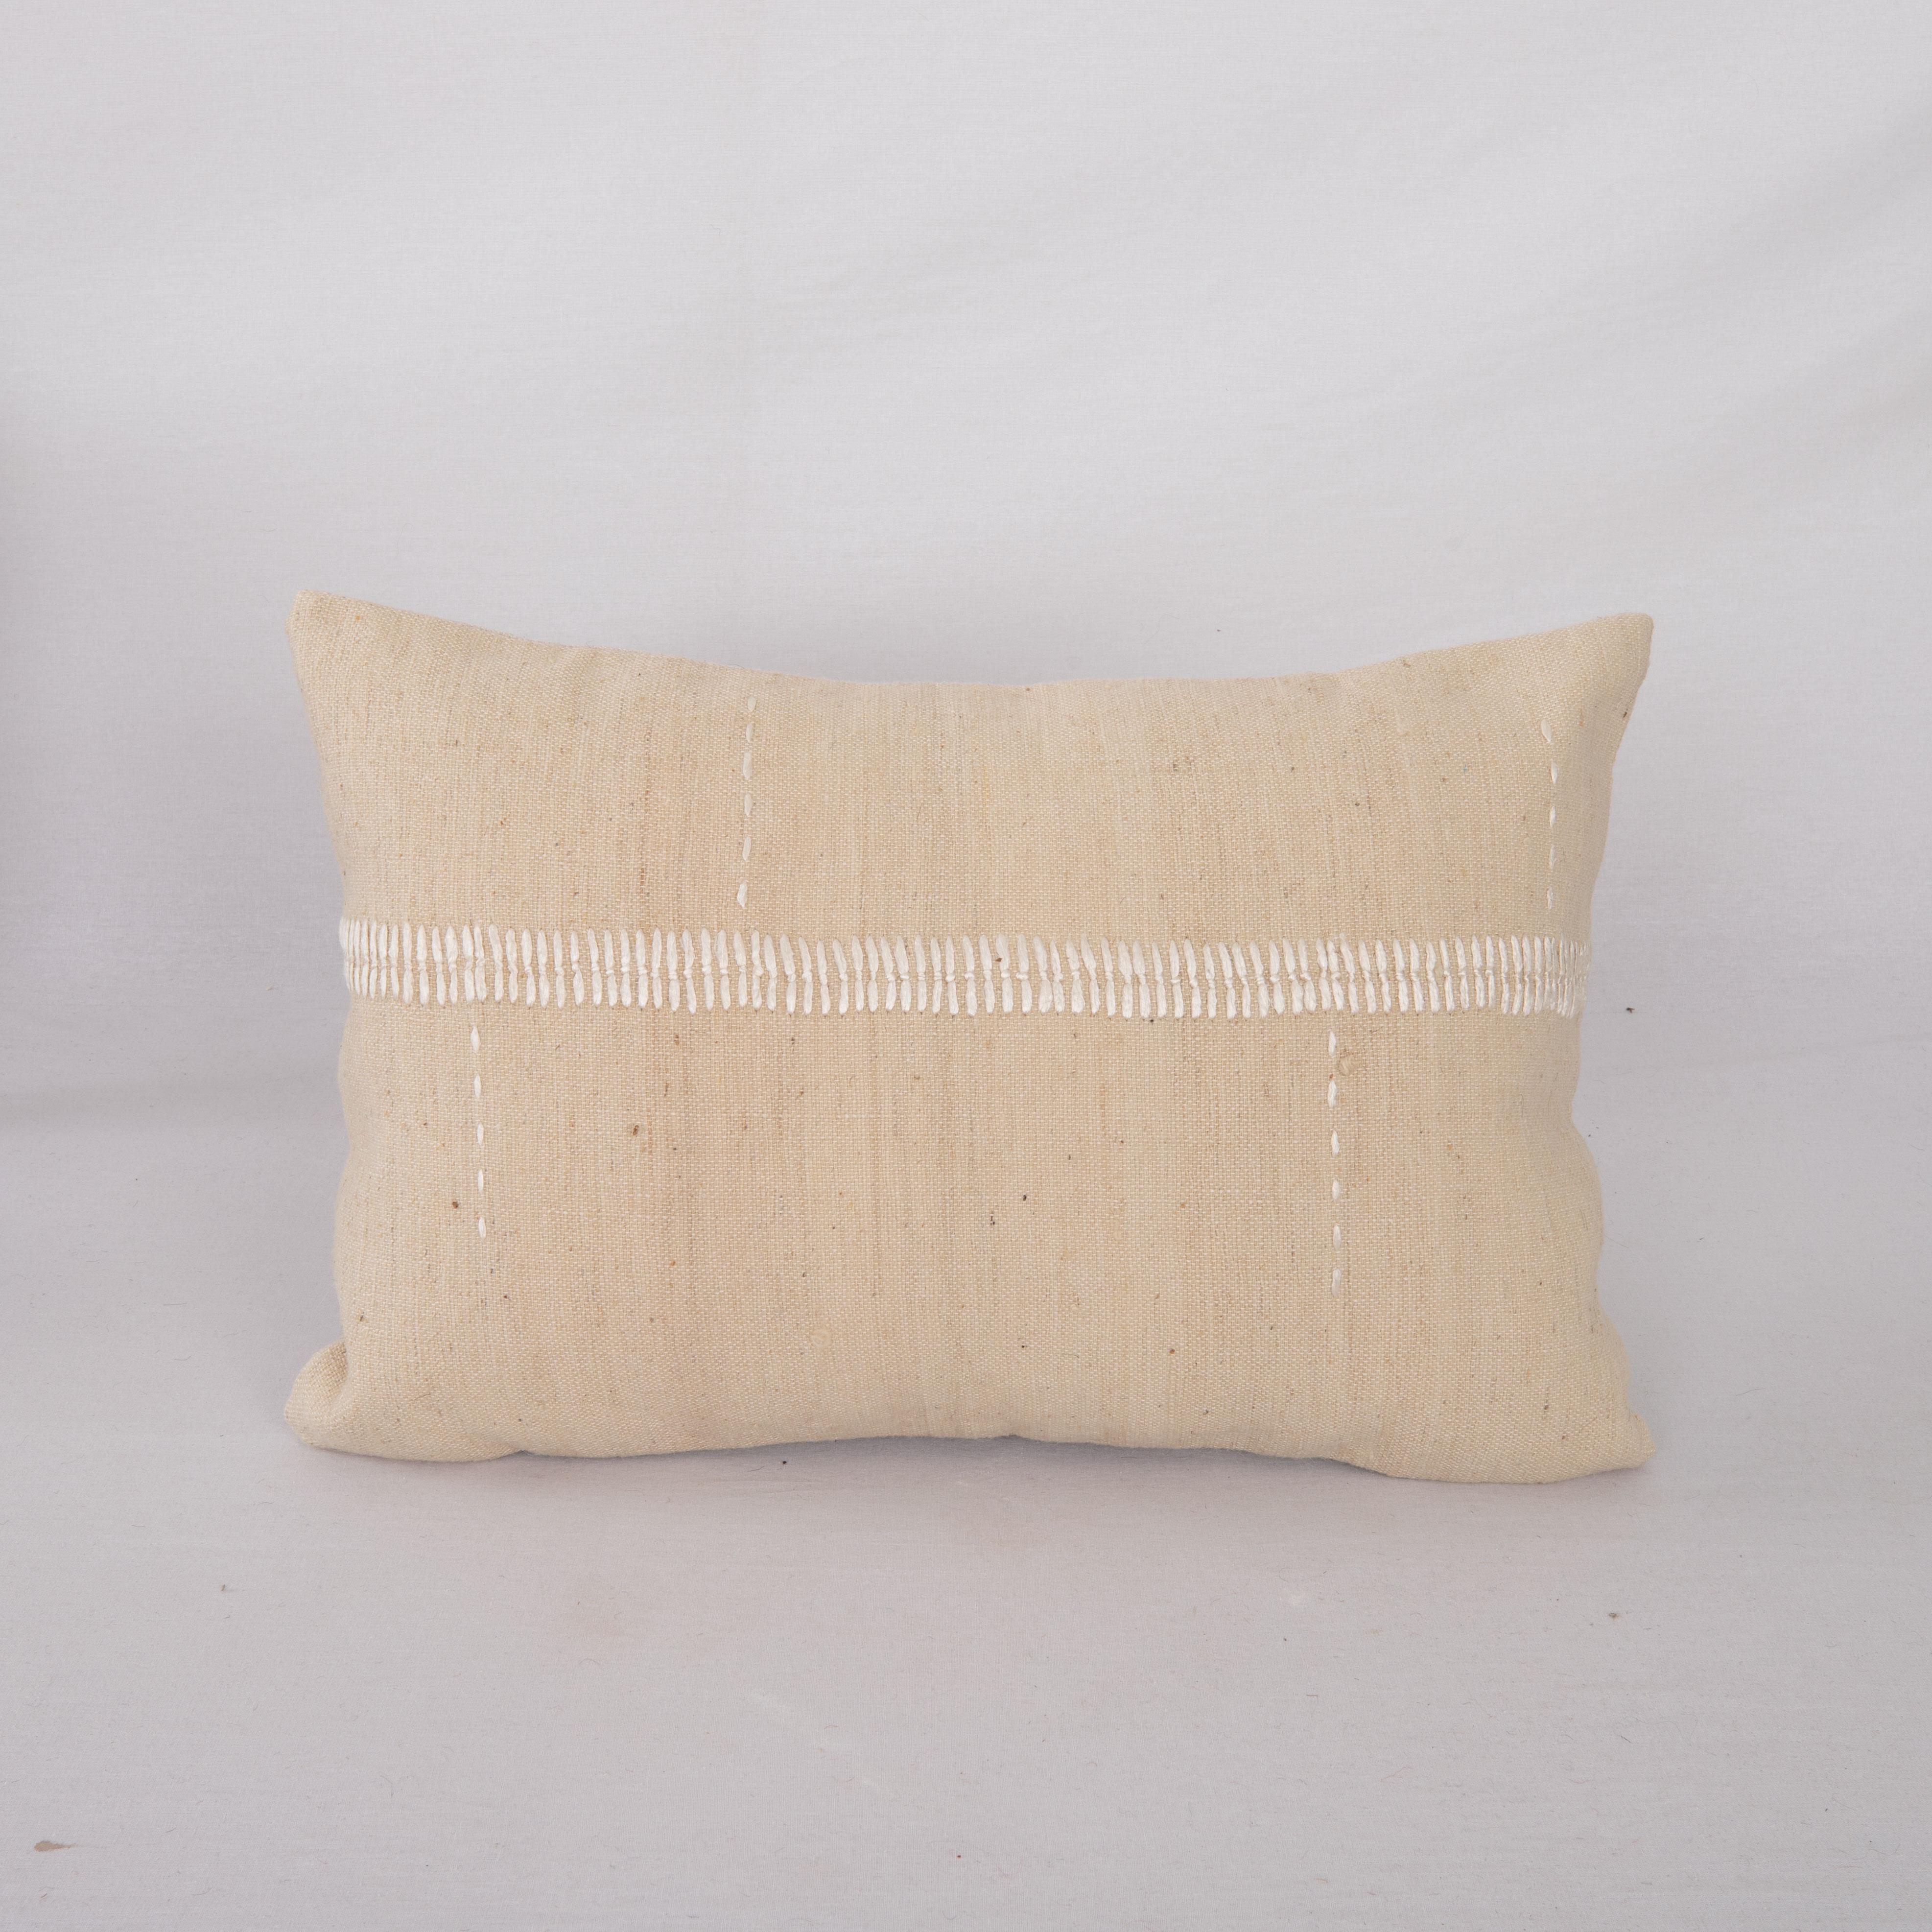 Cette taie d'oreiller est fabriquée à partir d'une housse de coton anatolien vintage. Les coutures en soie faites à la main sont un ajout à la pièce pour lui donner un détail raffiné.

Il n'est pas livré avec des inserts.
lin dans le dos.
Fermeture